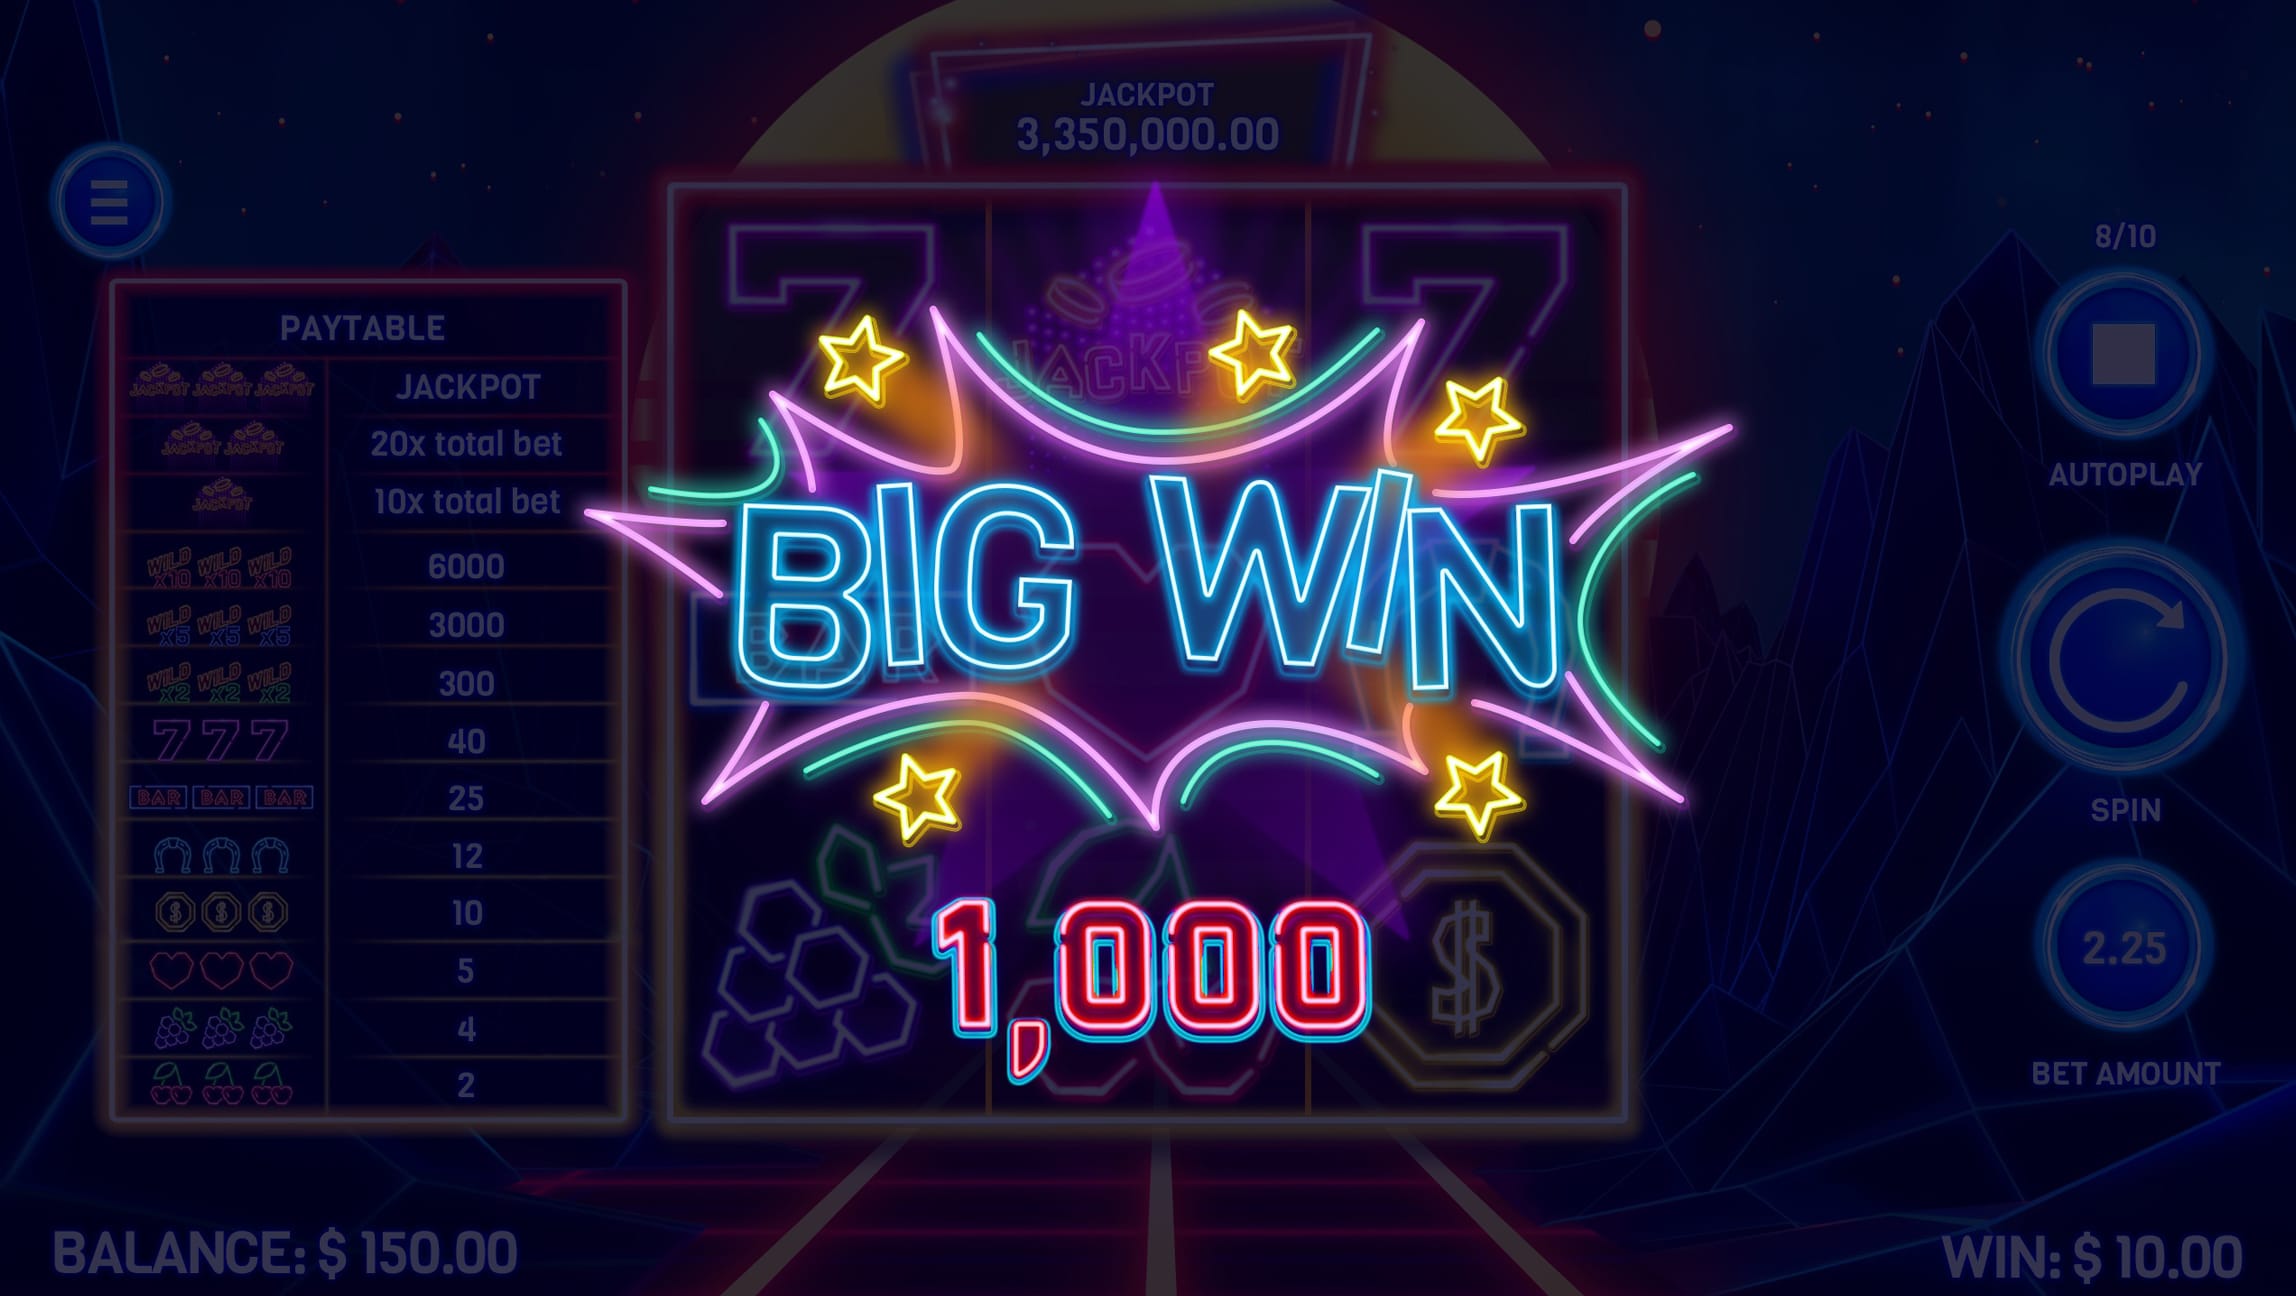 10 times vegas big win screenshot